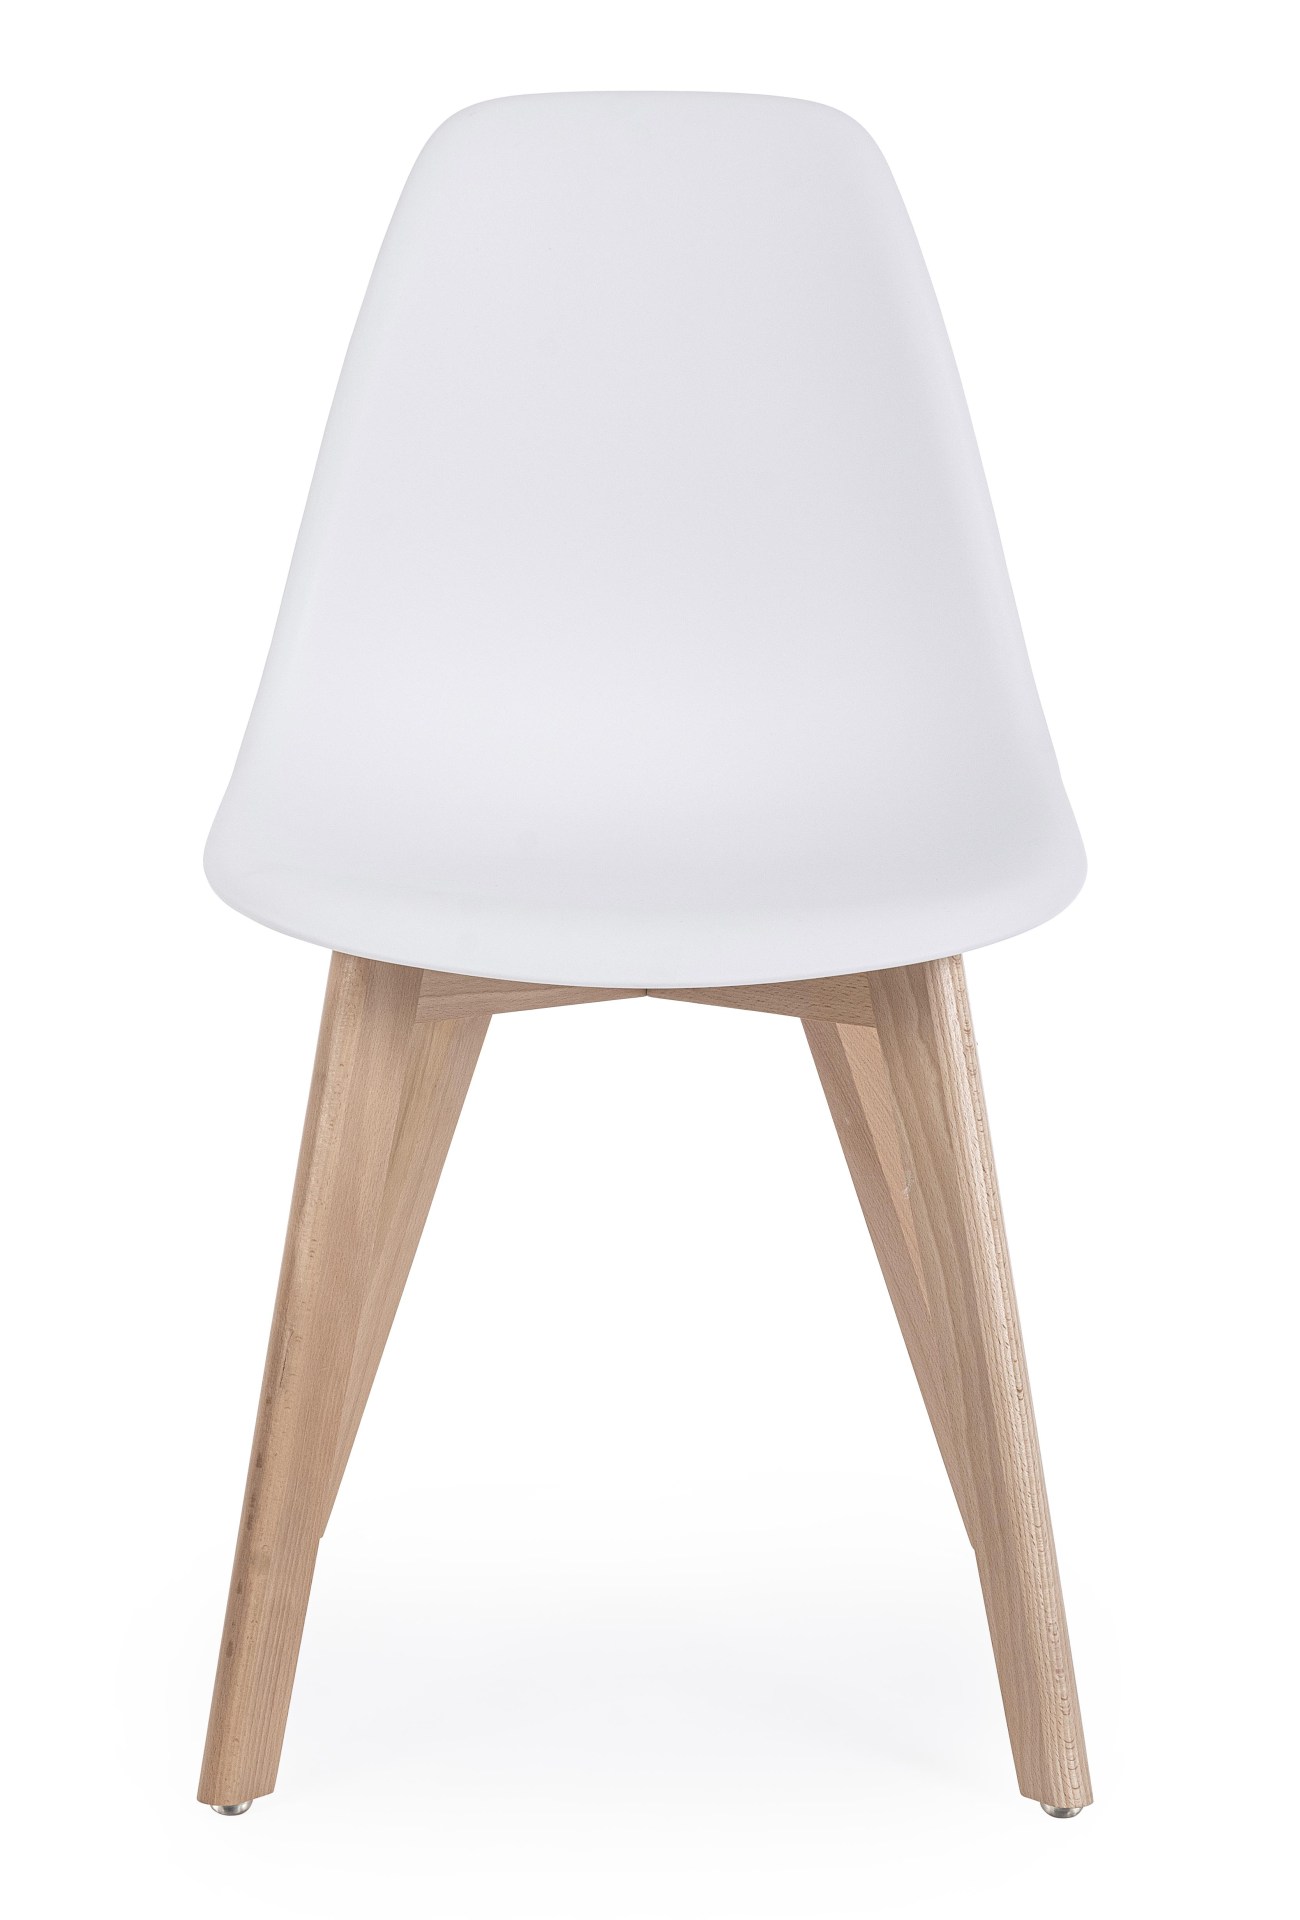 Der Stuhl System überzeugt mit seinem modernem Design. Gefertigt wurde der Stuhl aus Kunststoff, welcher einen weißen Farbton besitzt. Das Gestell ist aus Buchenholz. Die Sitzhöhe des Stuhls ist 46 cm